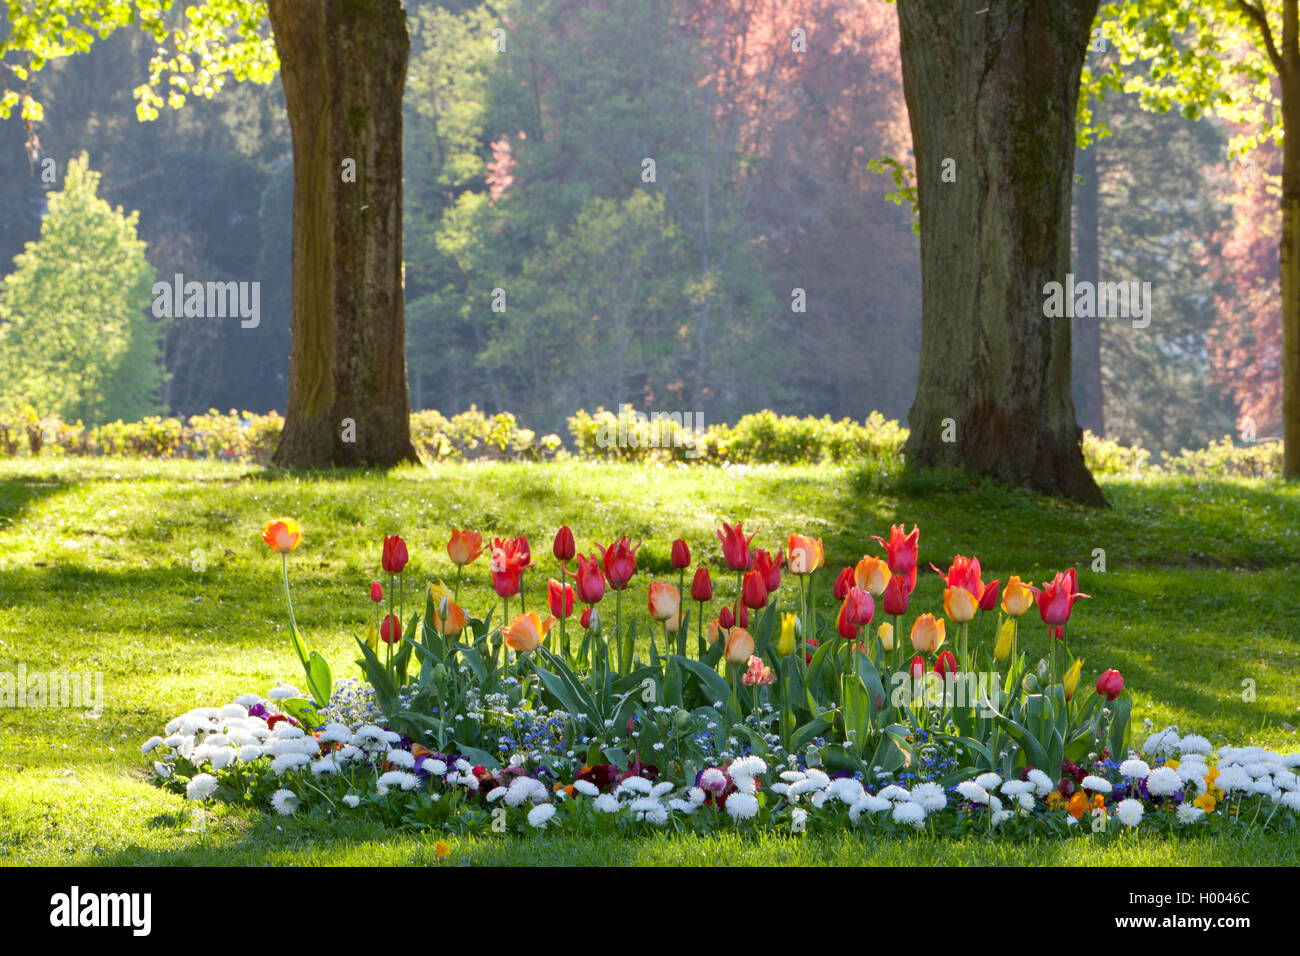 Jardin commun tulip (Tulipa spec.), lit de fleurs avec des tulipes et dasies dans un parc, l'Allemagne, Bade-Wurtemberg, Baden-Baden Banque D'Images